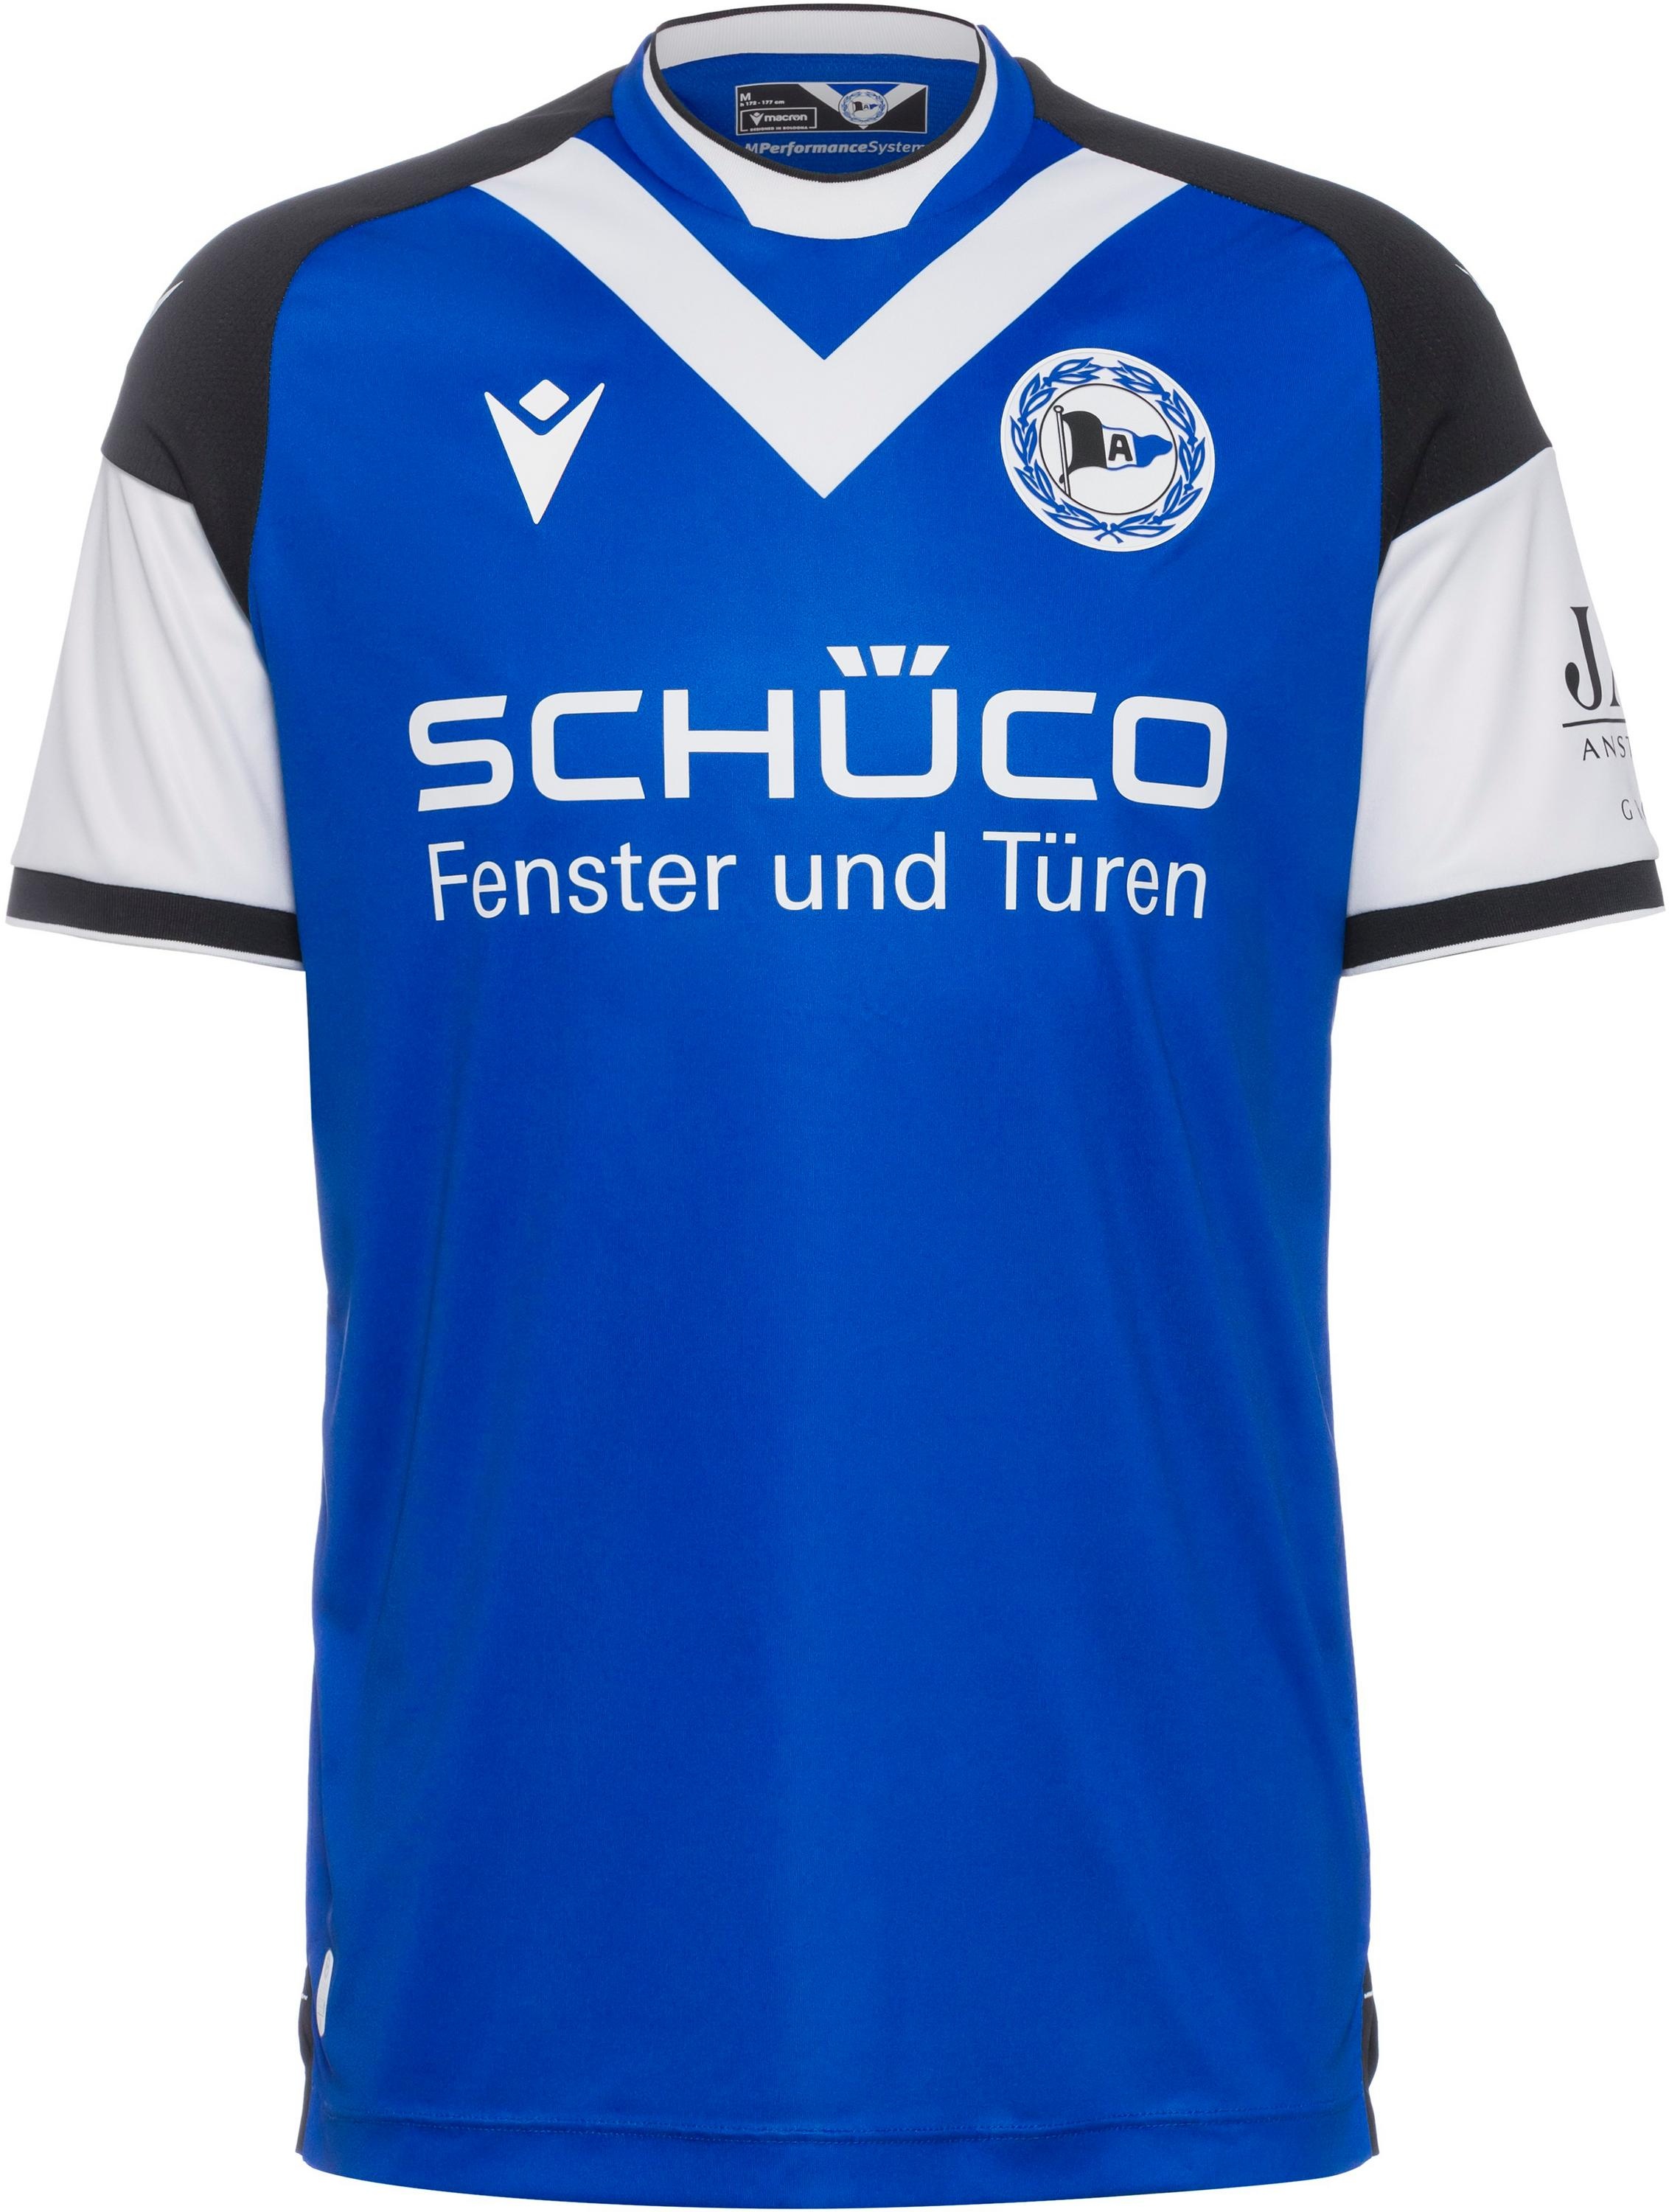 macron Arminia Bielefeld 23-24 Heim Teamtrikot Herren in blau-schwarz-weiß, Größe L - blau